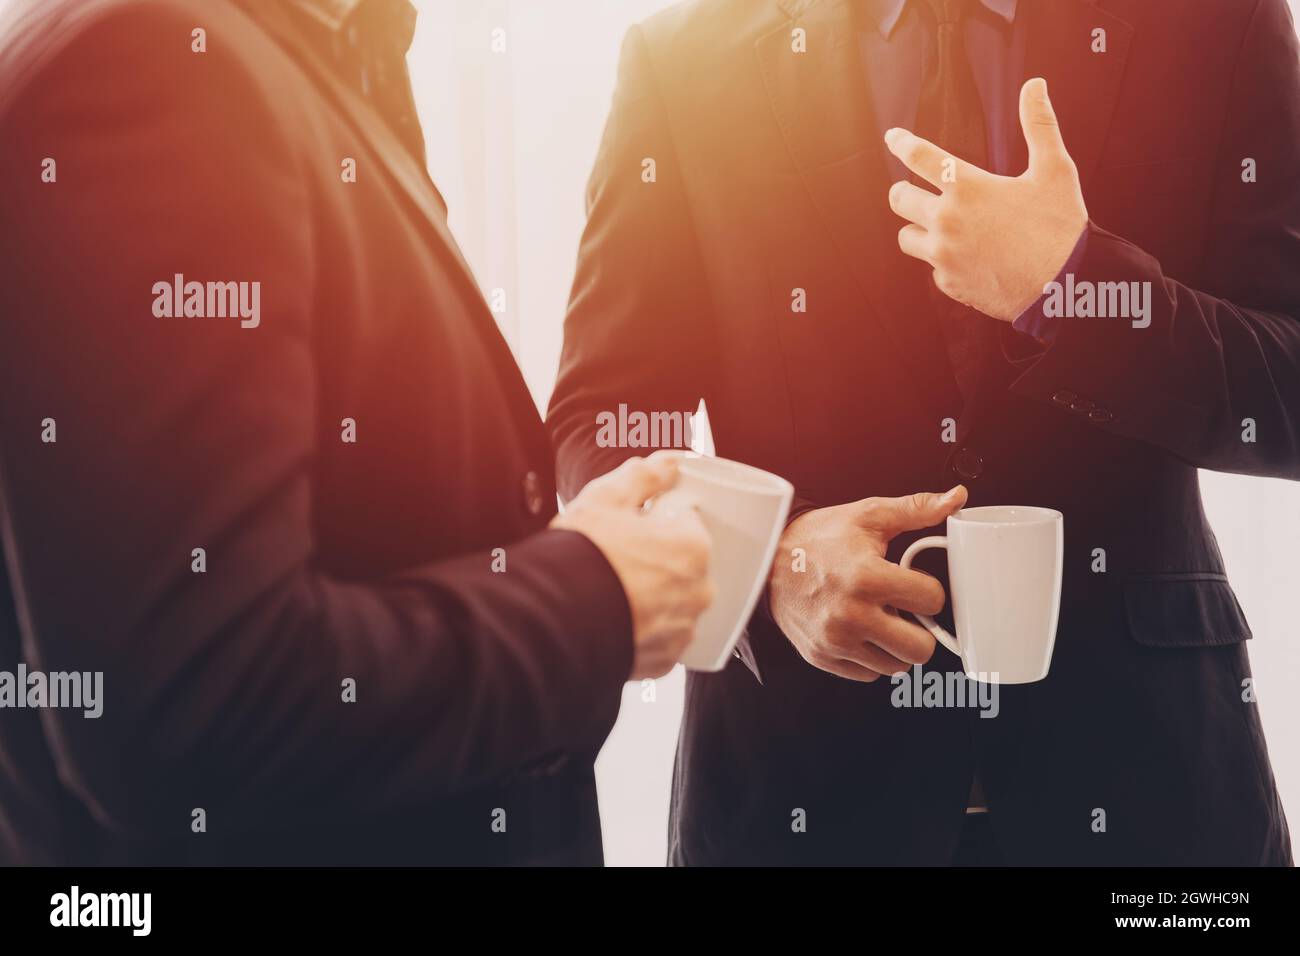 Zwei Geschäftsleute stehen im Gespräch zusammen mit einem Kaffeebecher am Morgen in der Hand. Stockfoto